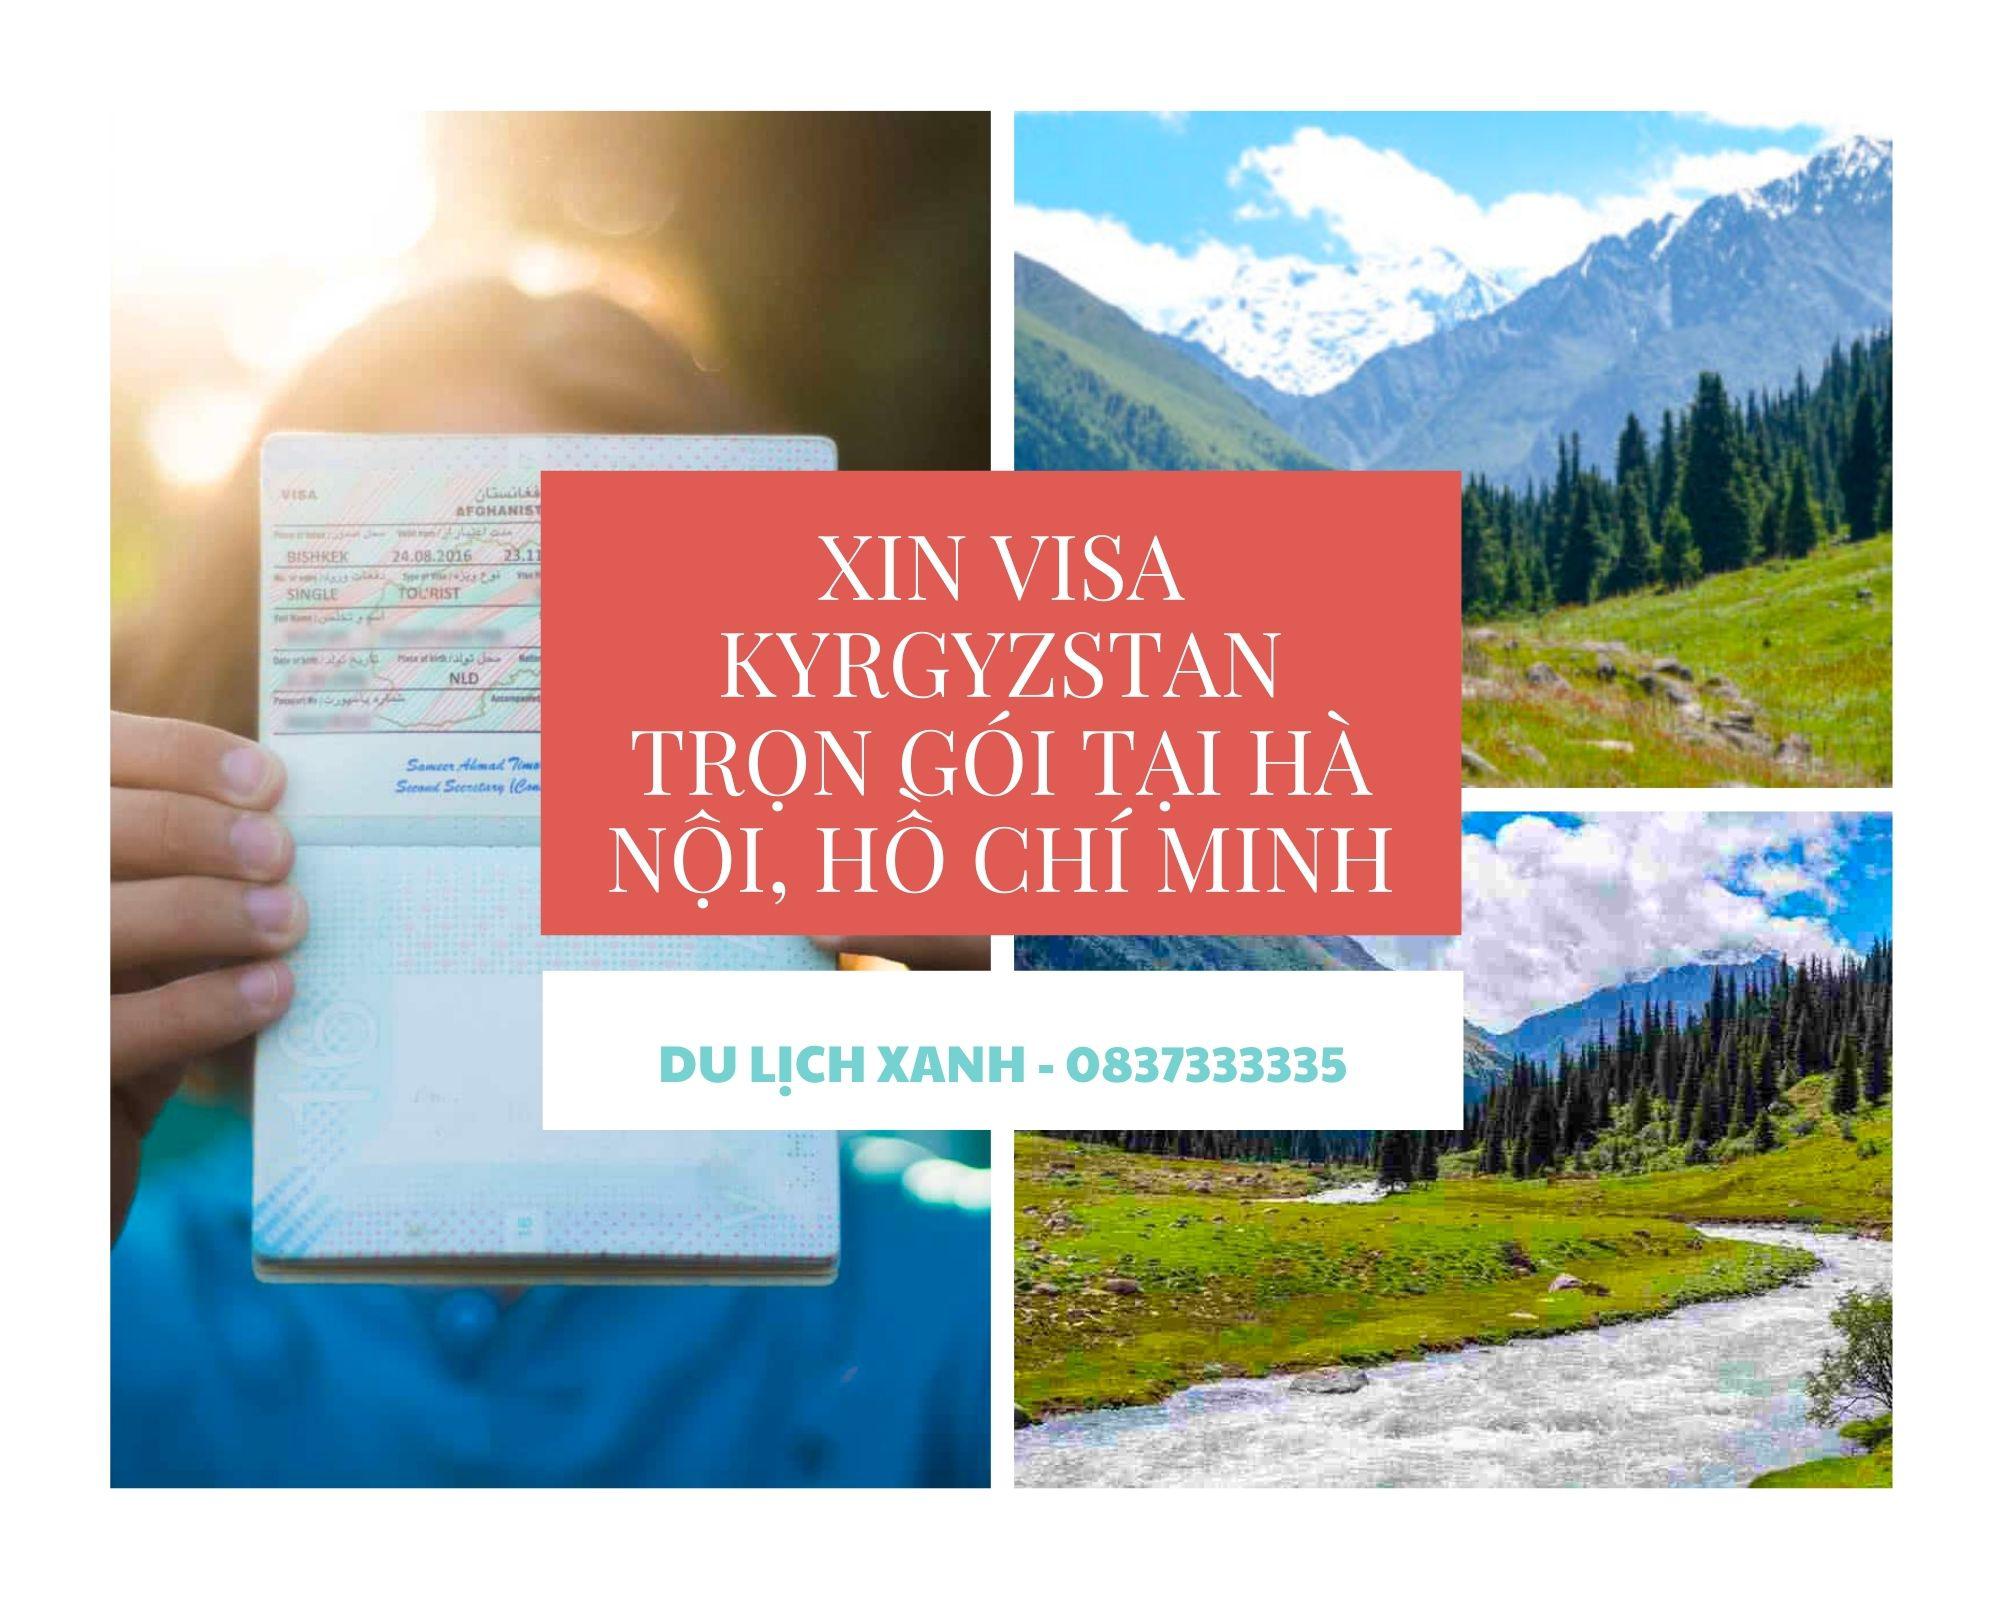 Xin Visa Kyrgyzstan trọn gói tại Hà Nội, Hồ Chí Minh